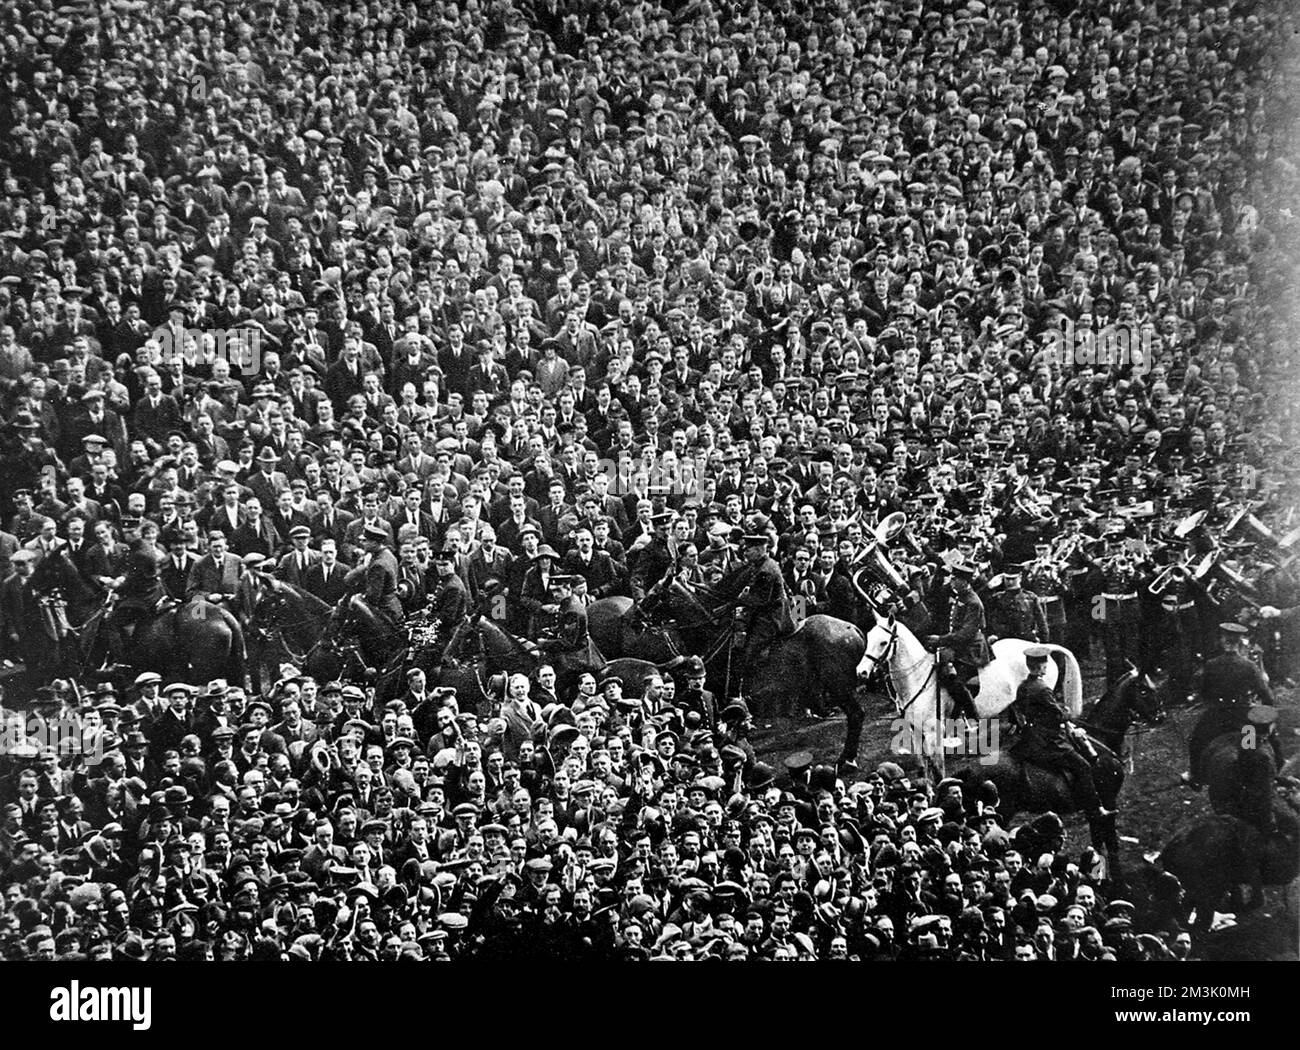 La foule au stade Wembley avant le début de la F.A. 1923 Coupe finale entre Bolton Wanderers et West Ham United. Il s'agissait de la première finale de la coupe qui s'est tenue au tout nouveau stade de Wembley, qui avait été construit en 300 jours à un coût de ??750 000. Avant le début du match, une foule d'environ 100 000 personnes (la plupart sans billet) a envahi les portes et dans le stade. Cela signifie qu'il y avait environ 200 000 personnes dans un terrain conçu pour 127 000 personnes. La photo montre la scène pendant que le groupe (à droite) joue l'hymne national et les quelques policiers montés tentent de maintenir l'ordre. Pro Banque D'Images